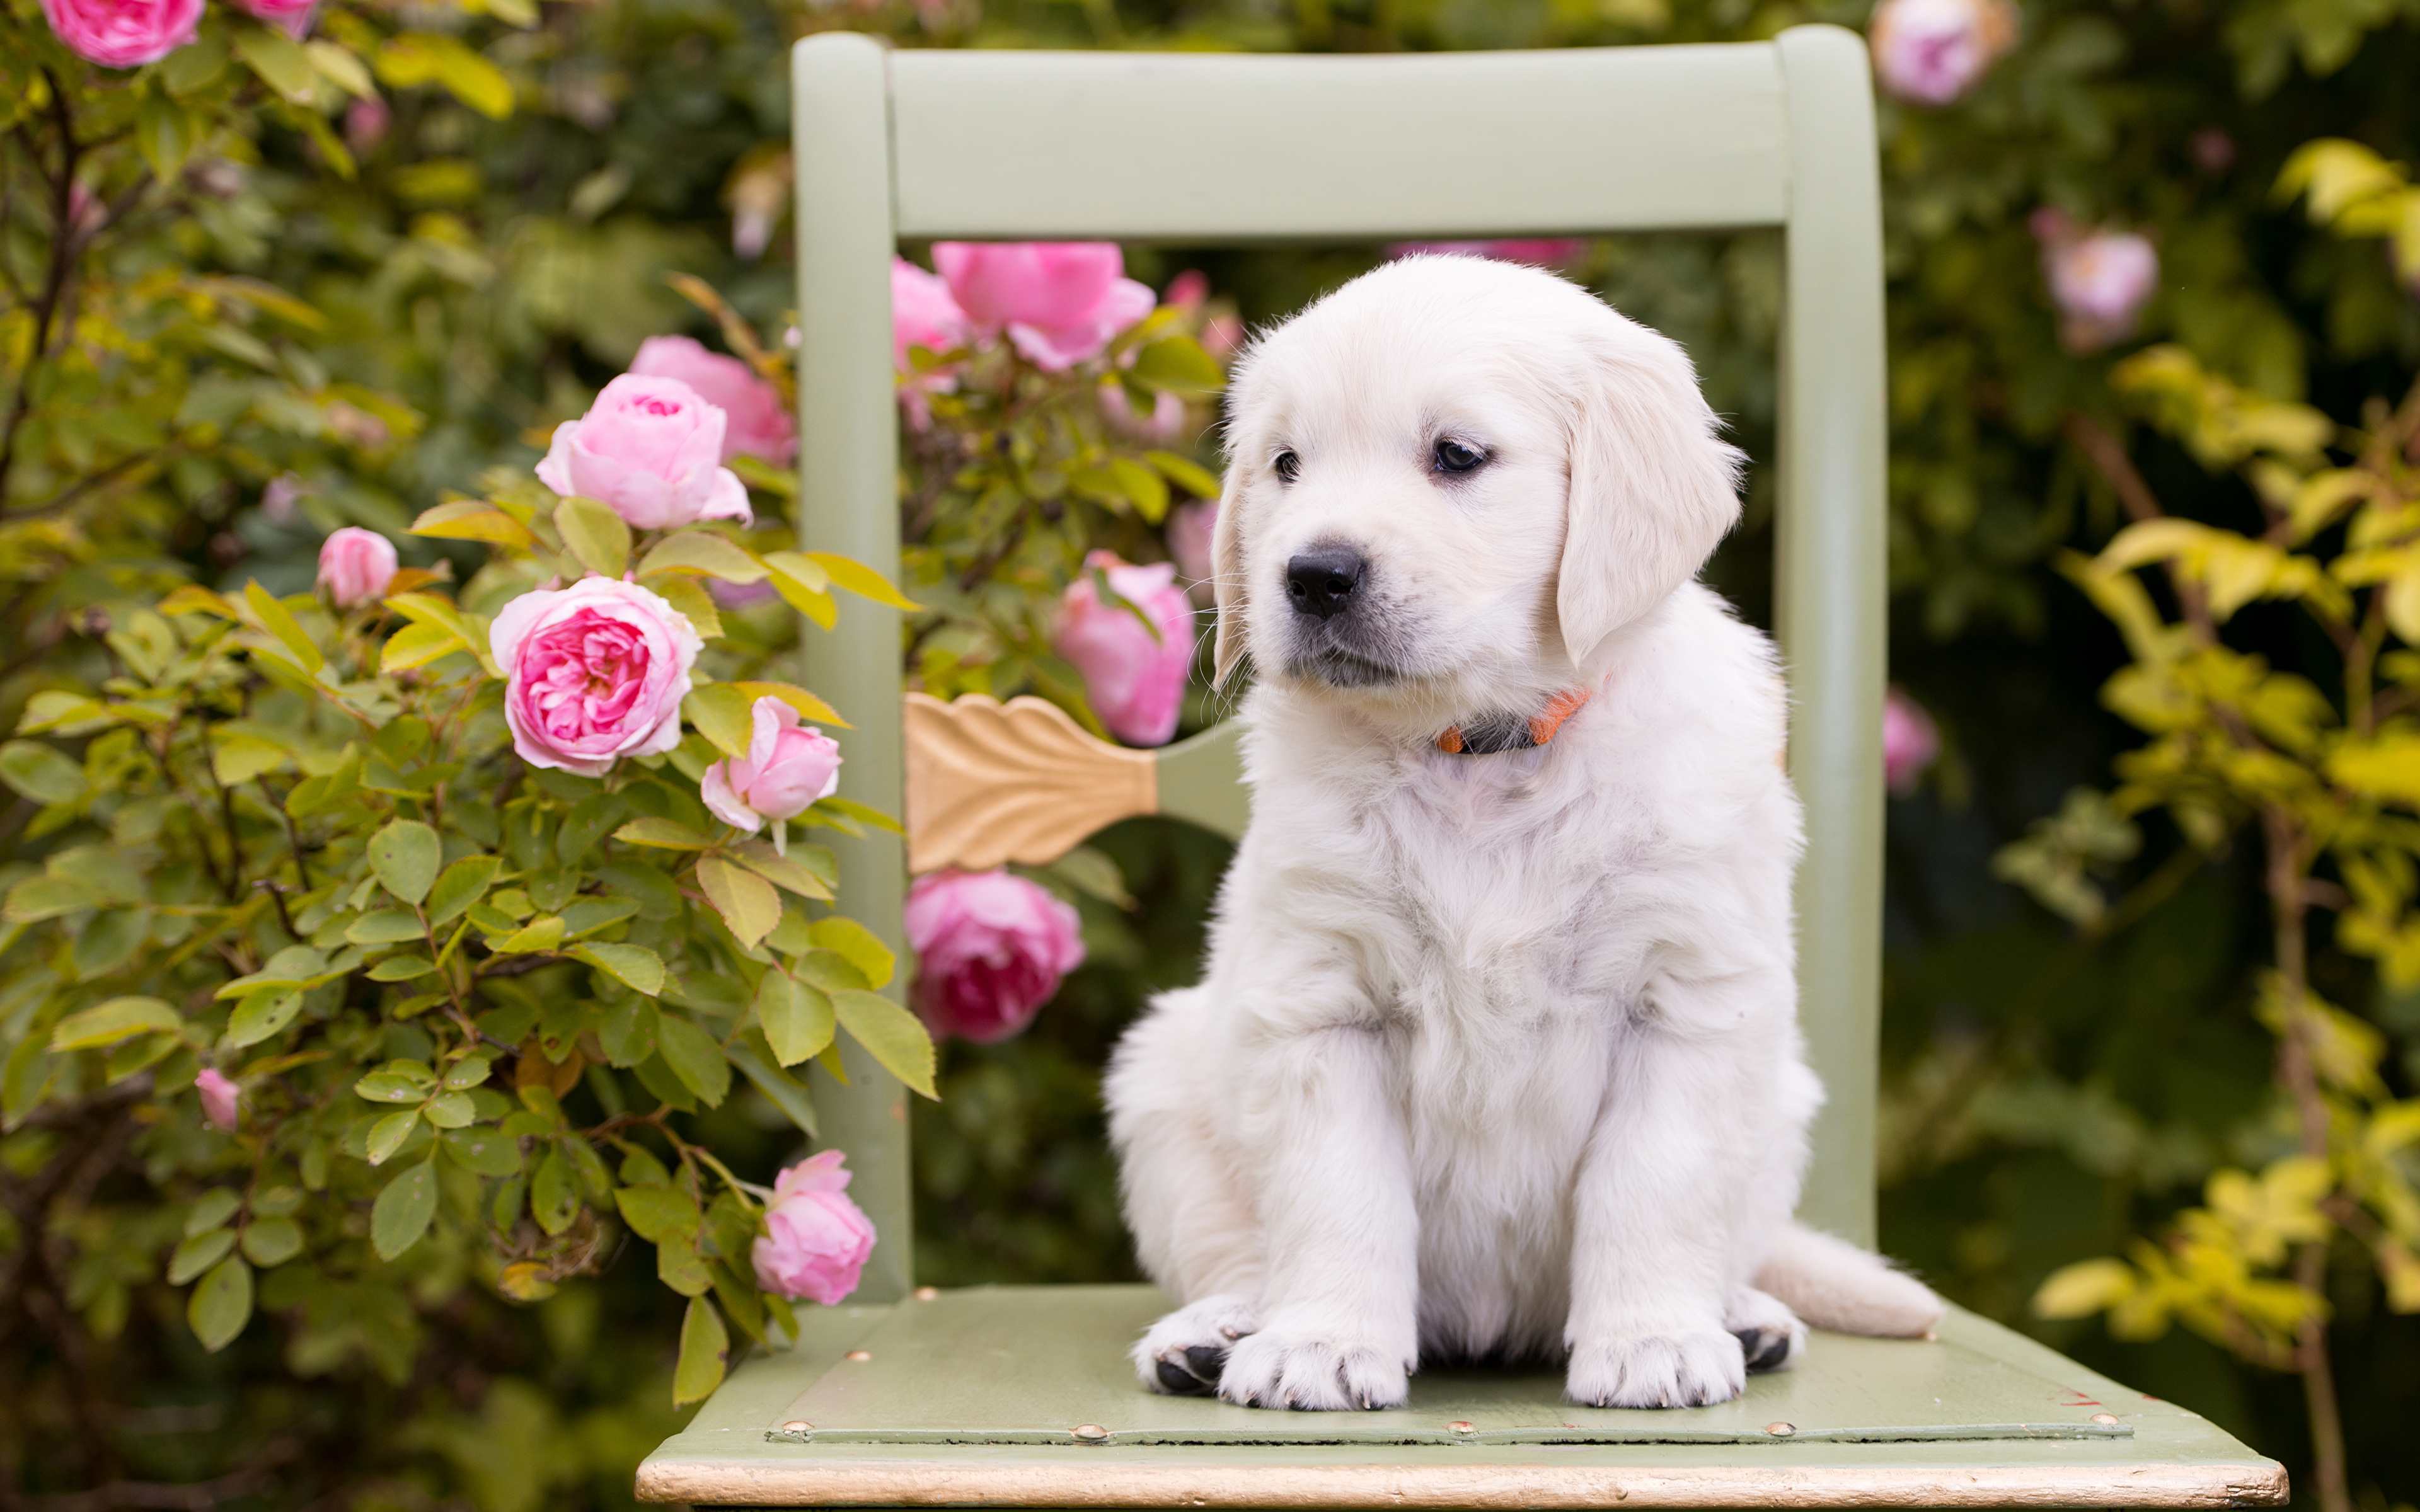 波美丝毛狗和玫瑰 库存照片. 图片 包括有 森林, 小狗, 绿色, 设计, 似犬, 公园, 图象, 哺乳动物 - 109219364